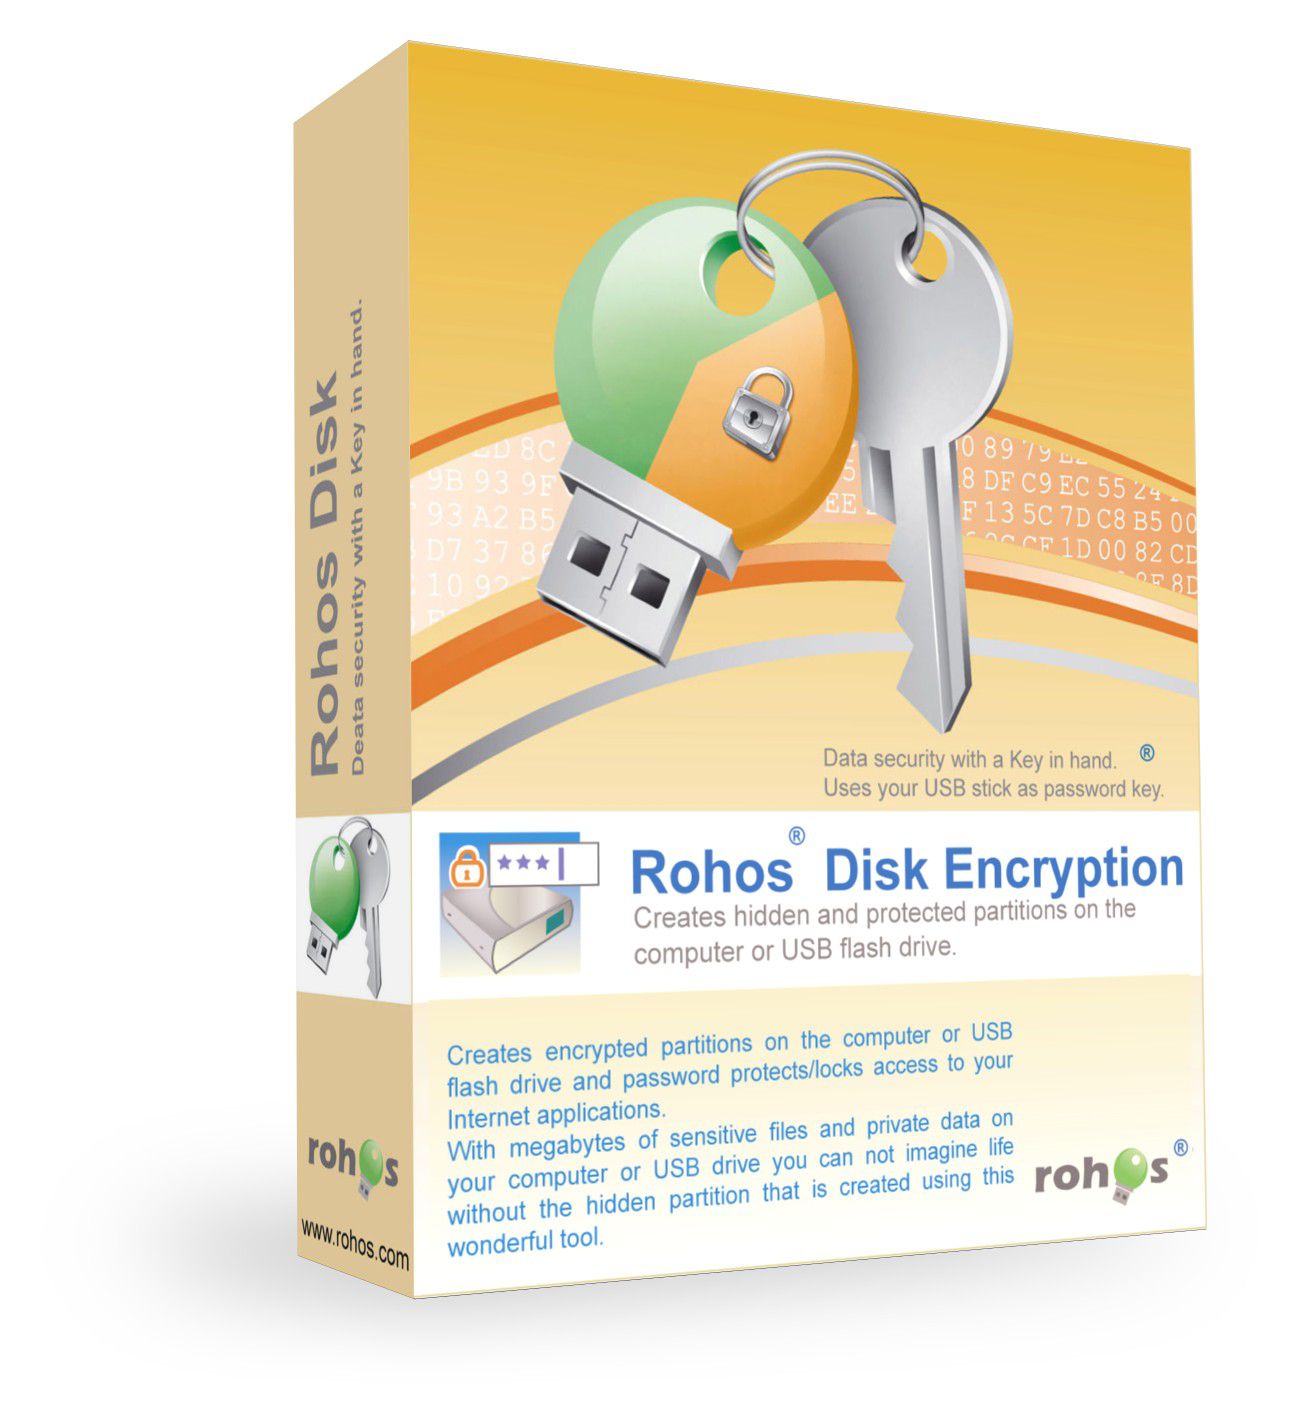 Rohos Disk Encryption 3.3 free instals